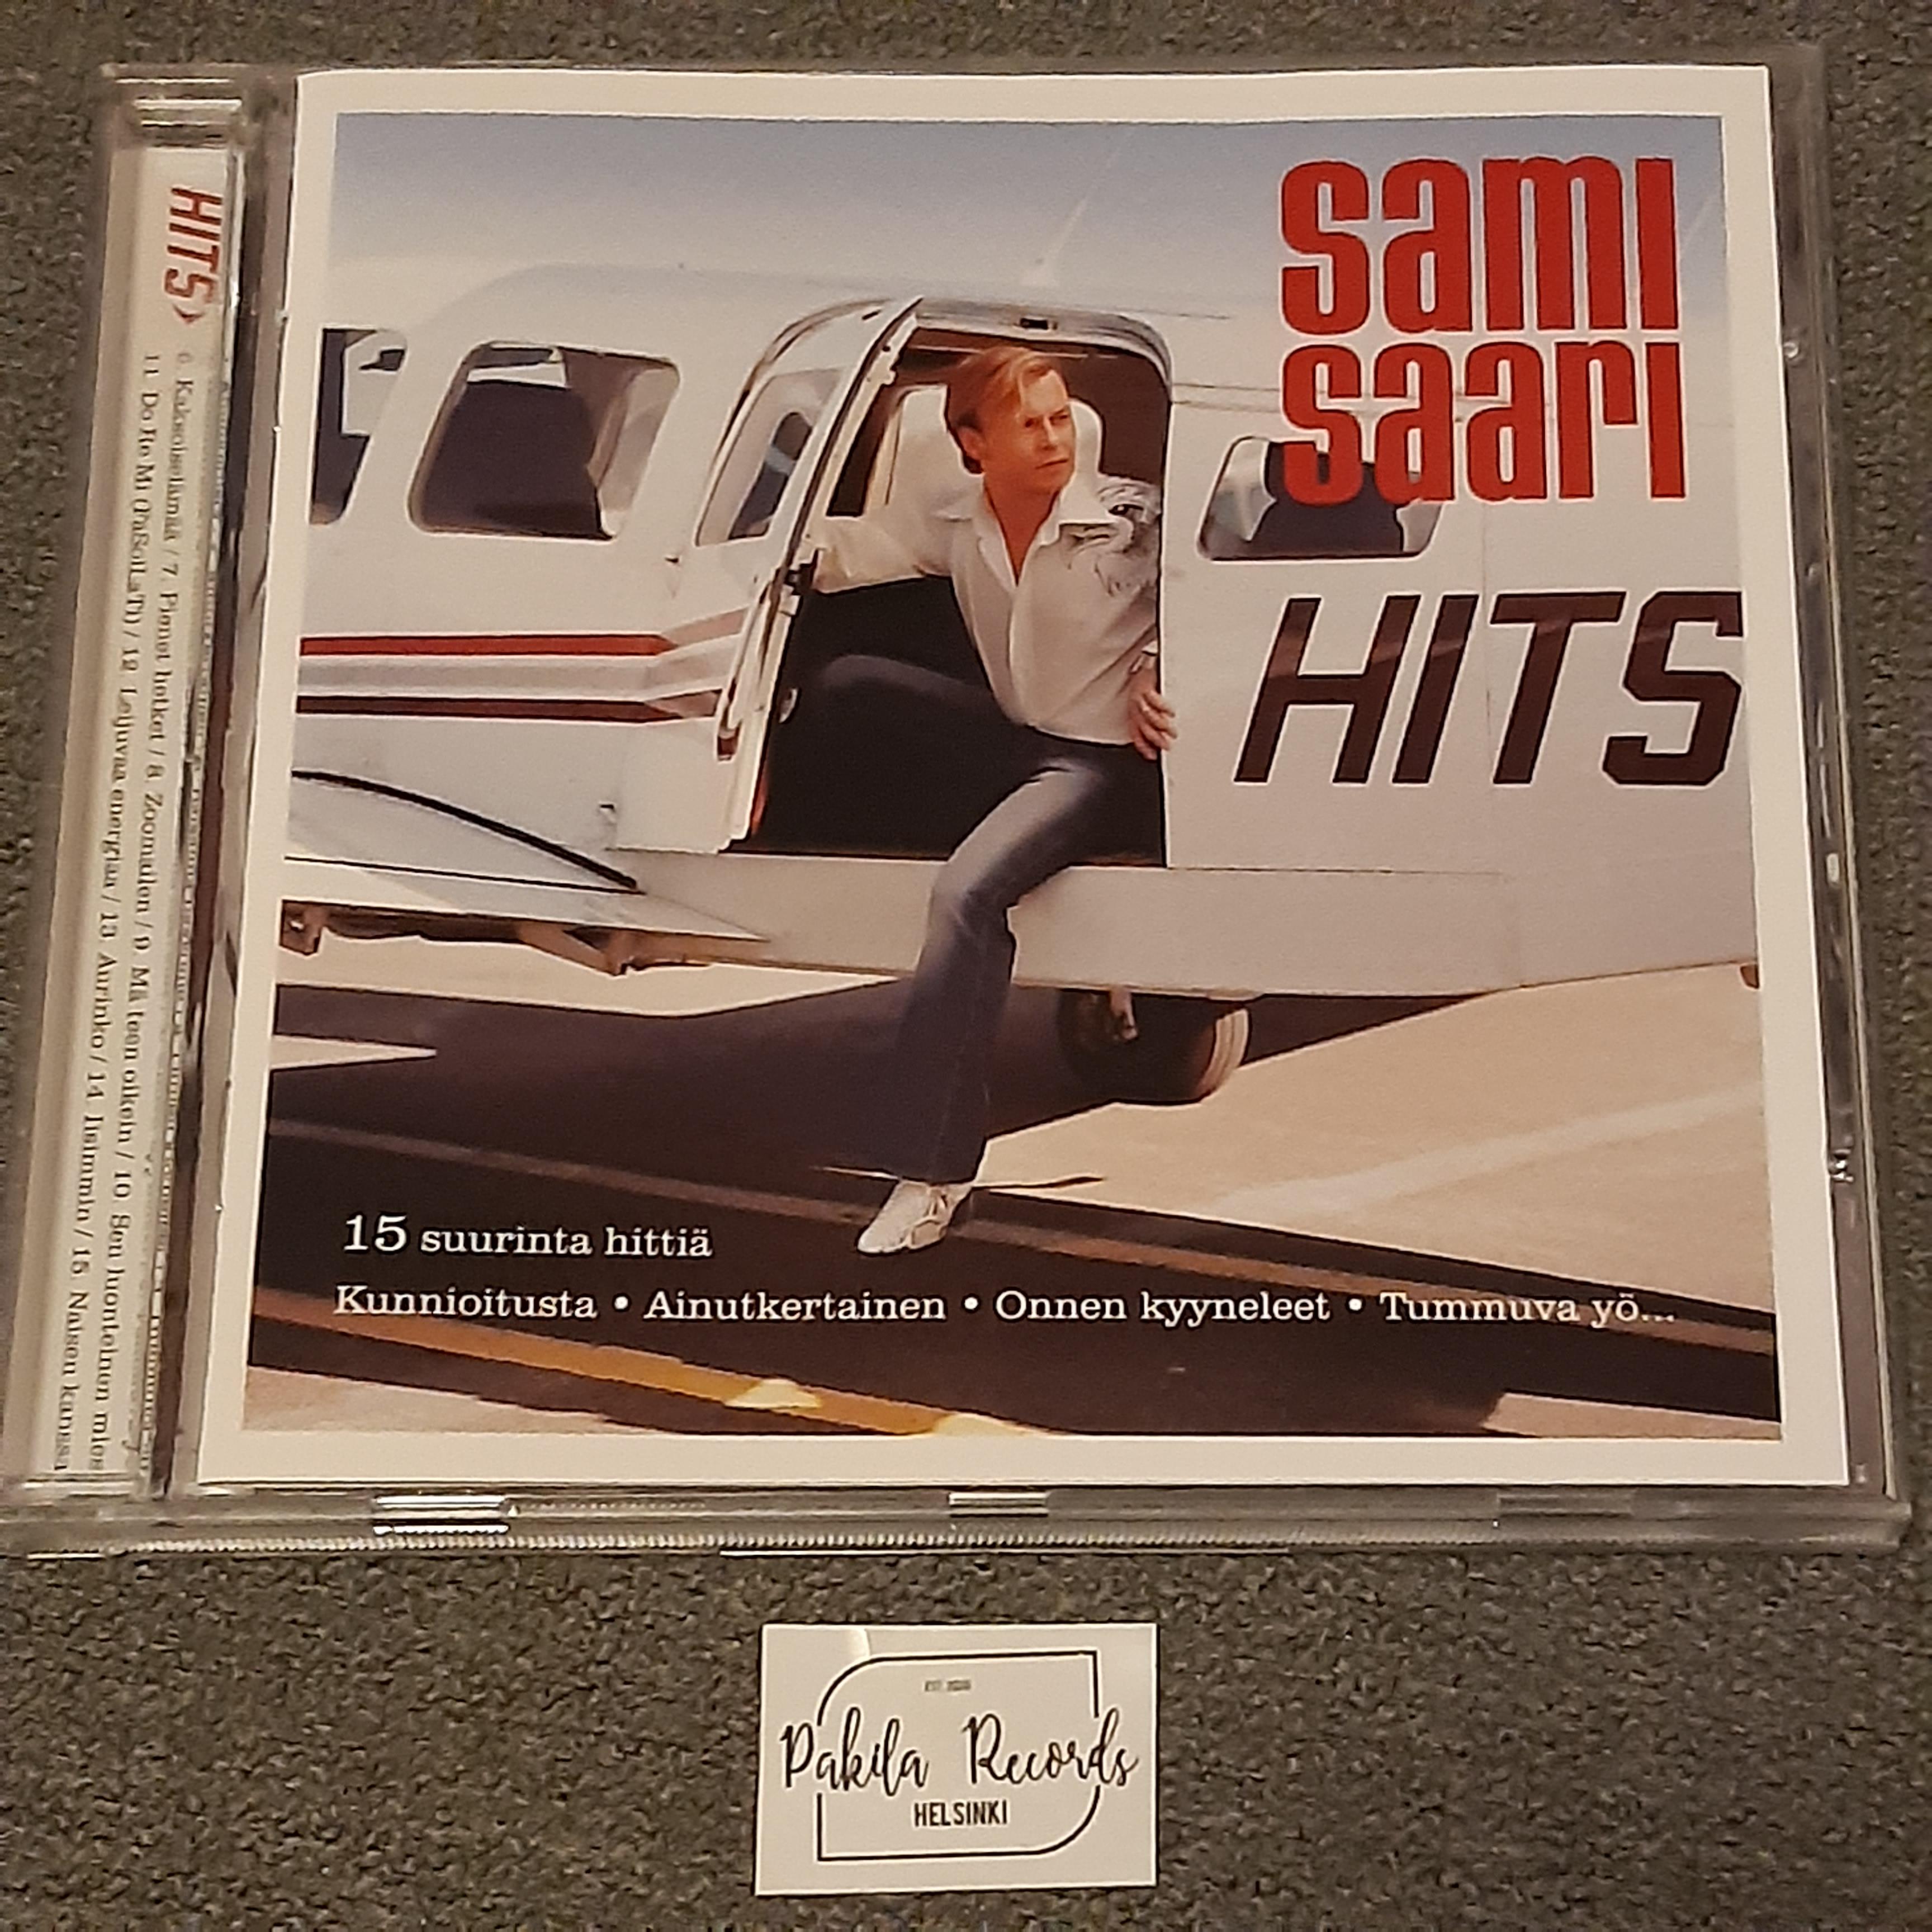 Sami Saari - Hits - CD (käytetty)